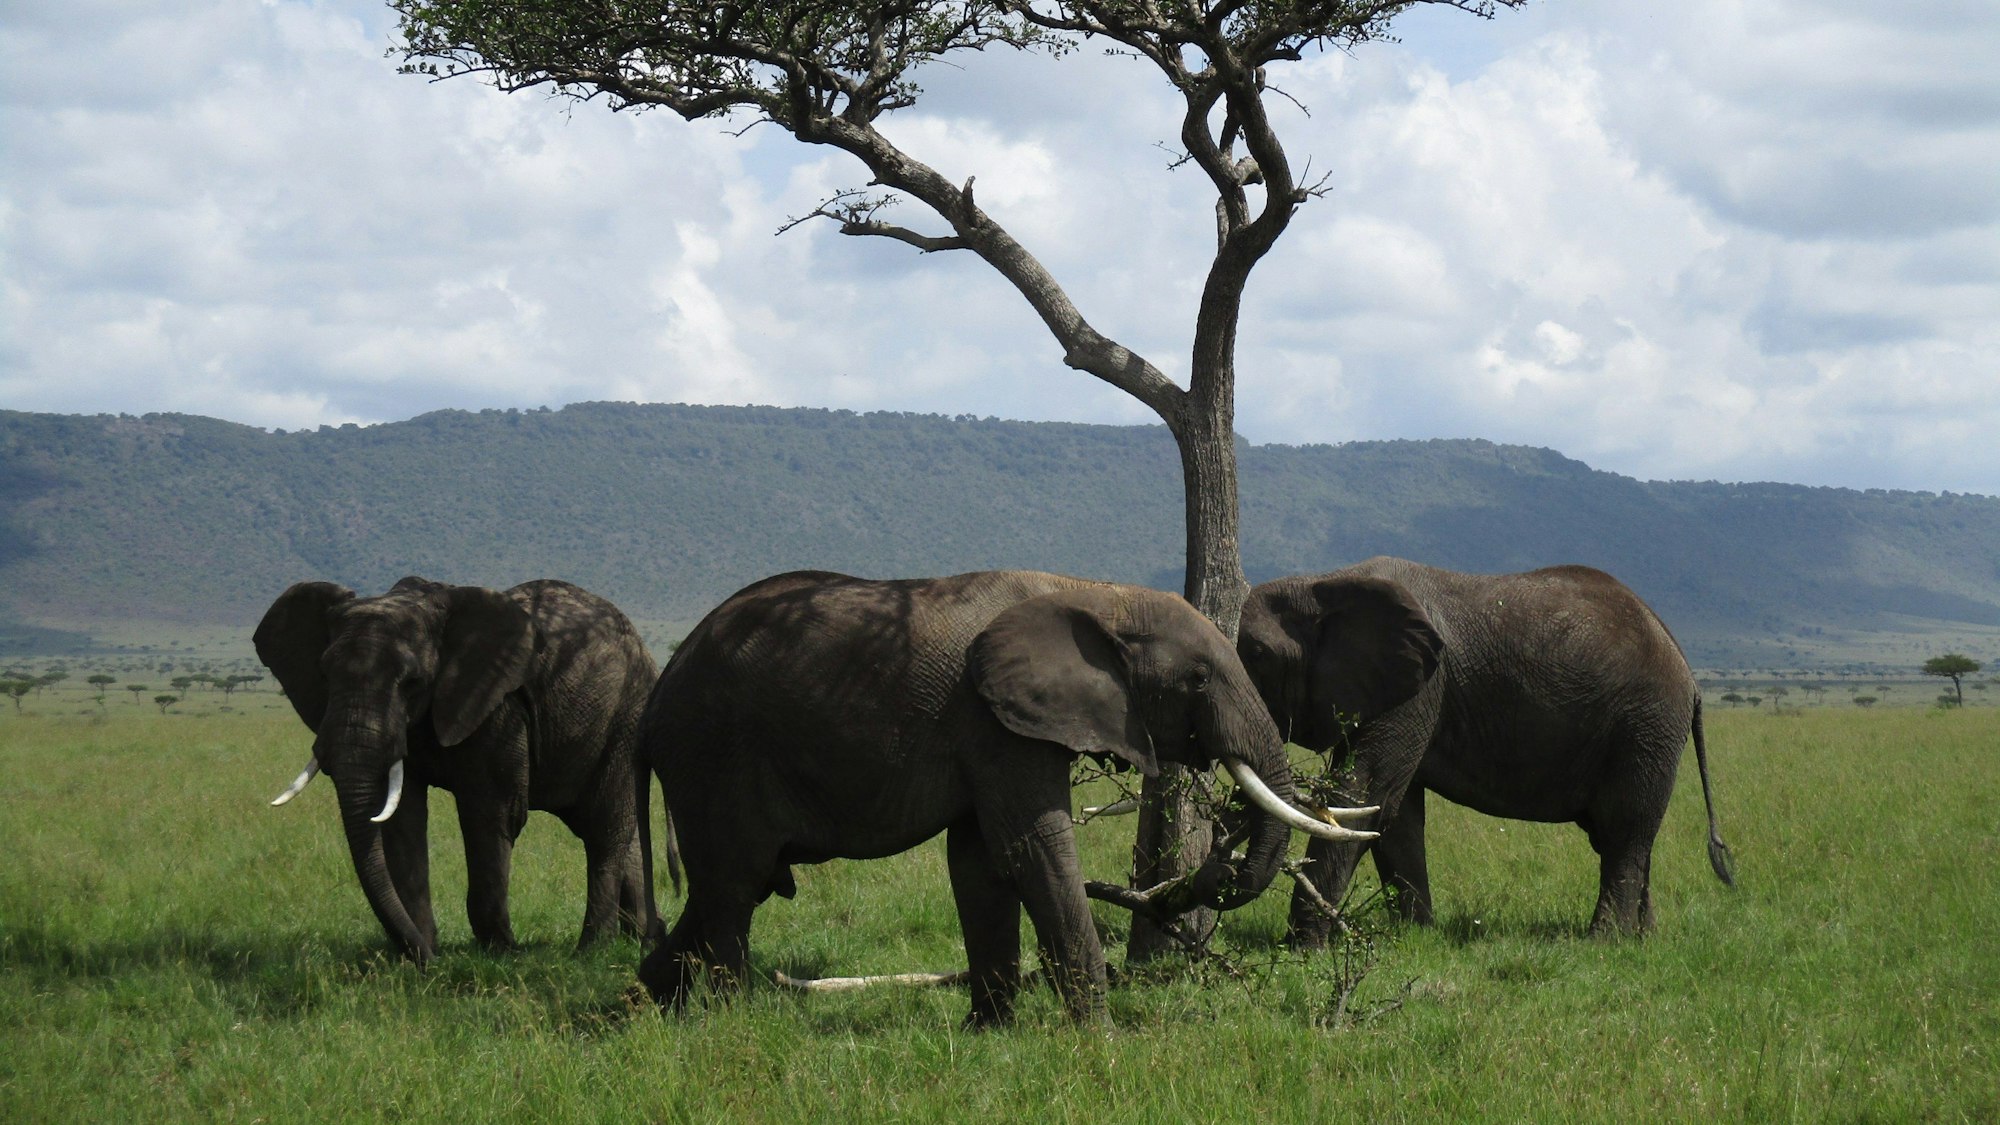 Drei Elefanten stehen vor einem Baum.